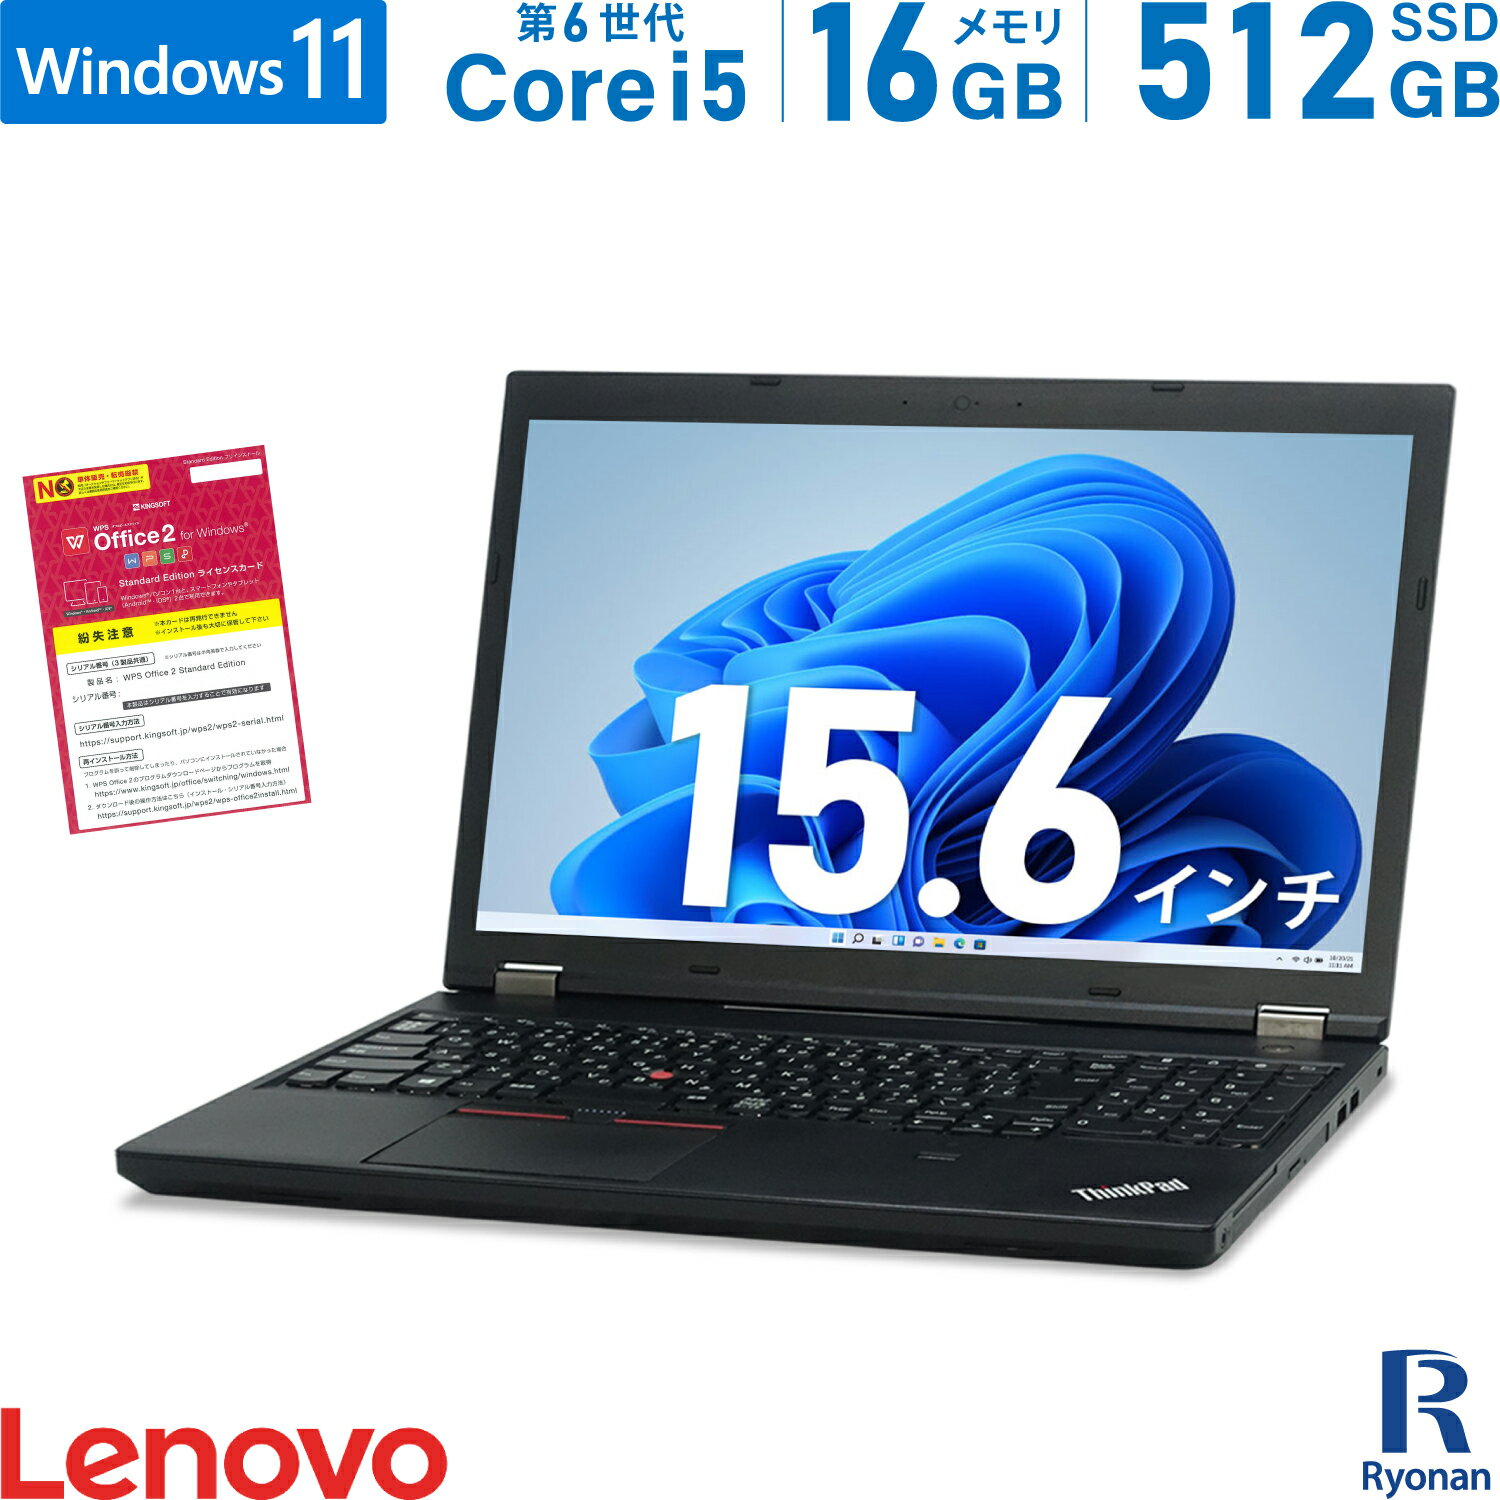 【エントリーするだけでポイント8倍】Lenovo ThinkPad L560 第6世代 Core i5 メモリ:16GB 新品SSD:512GB ノートパソコン 15.6インチ 無線LAN Office付 中古 パソコン 中古ノートパソコン Windows11 搭載 テンキー